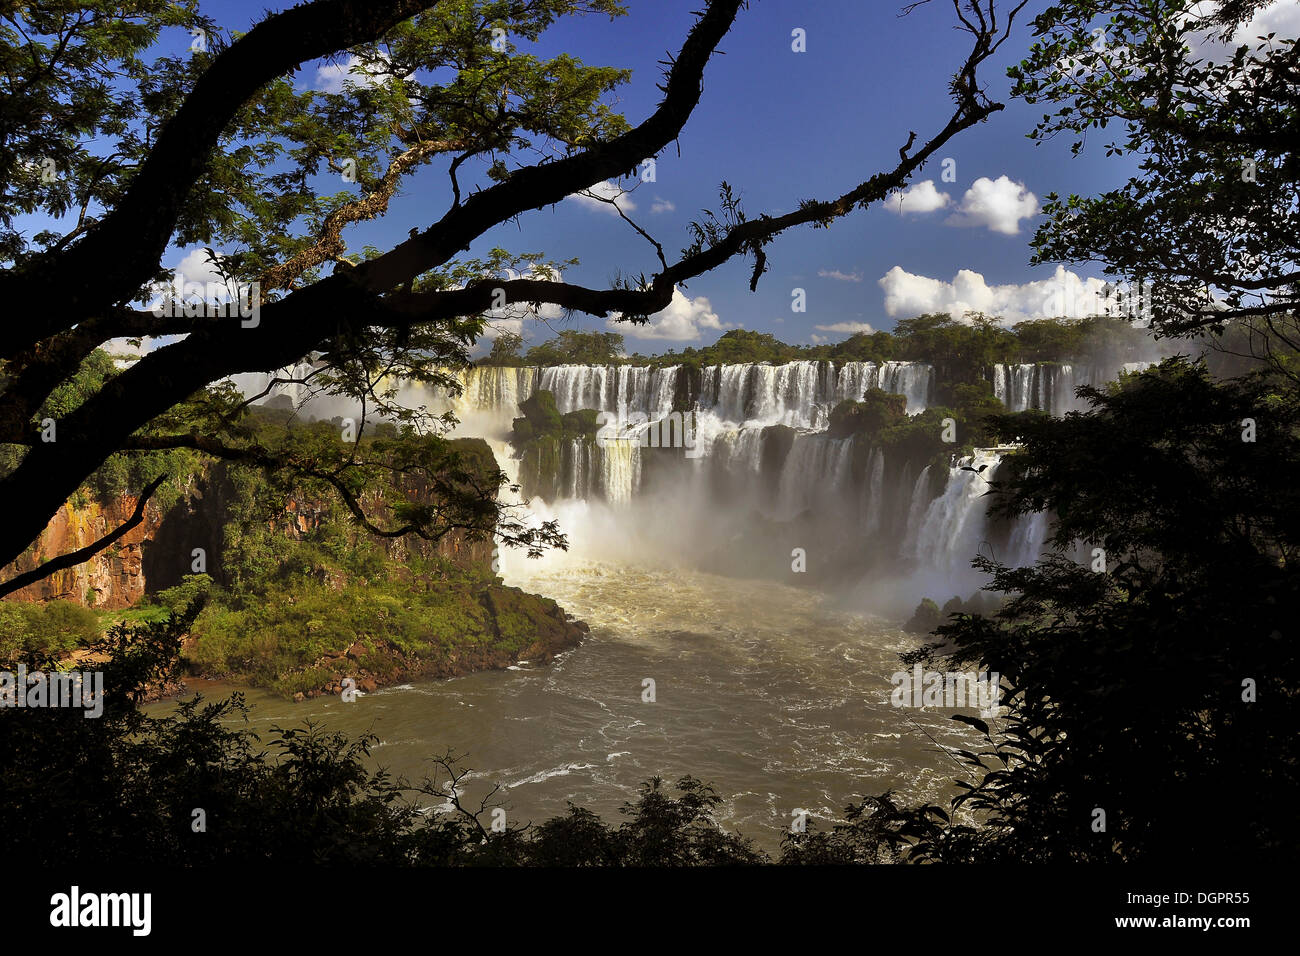 Cataratas del Iguazu, iguazu, puerto iguazu, Argentine - Brésil frontière, l'Amérique du Sud Banque D'Images